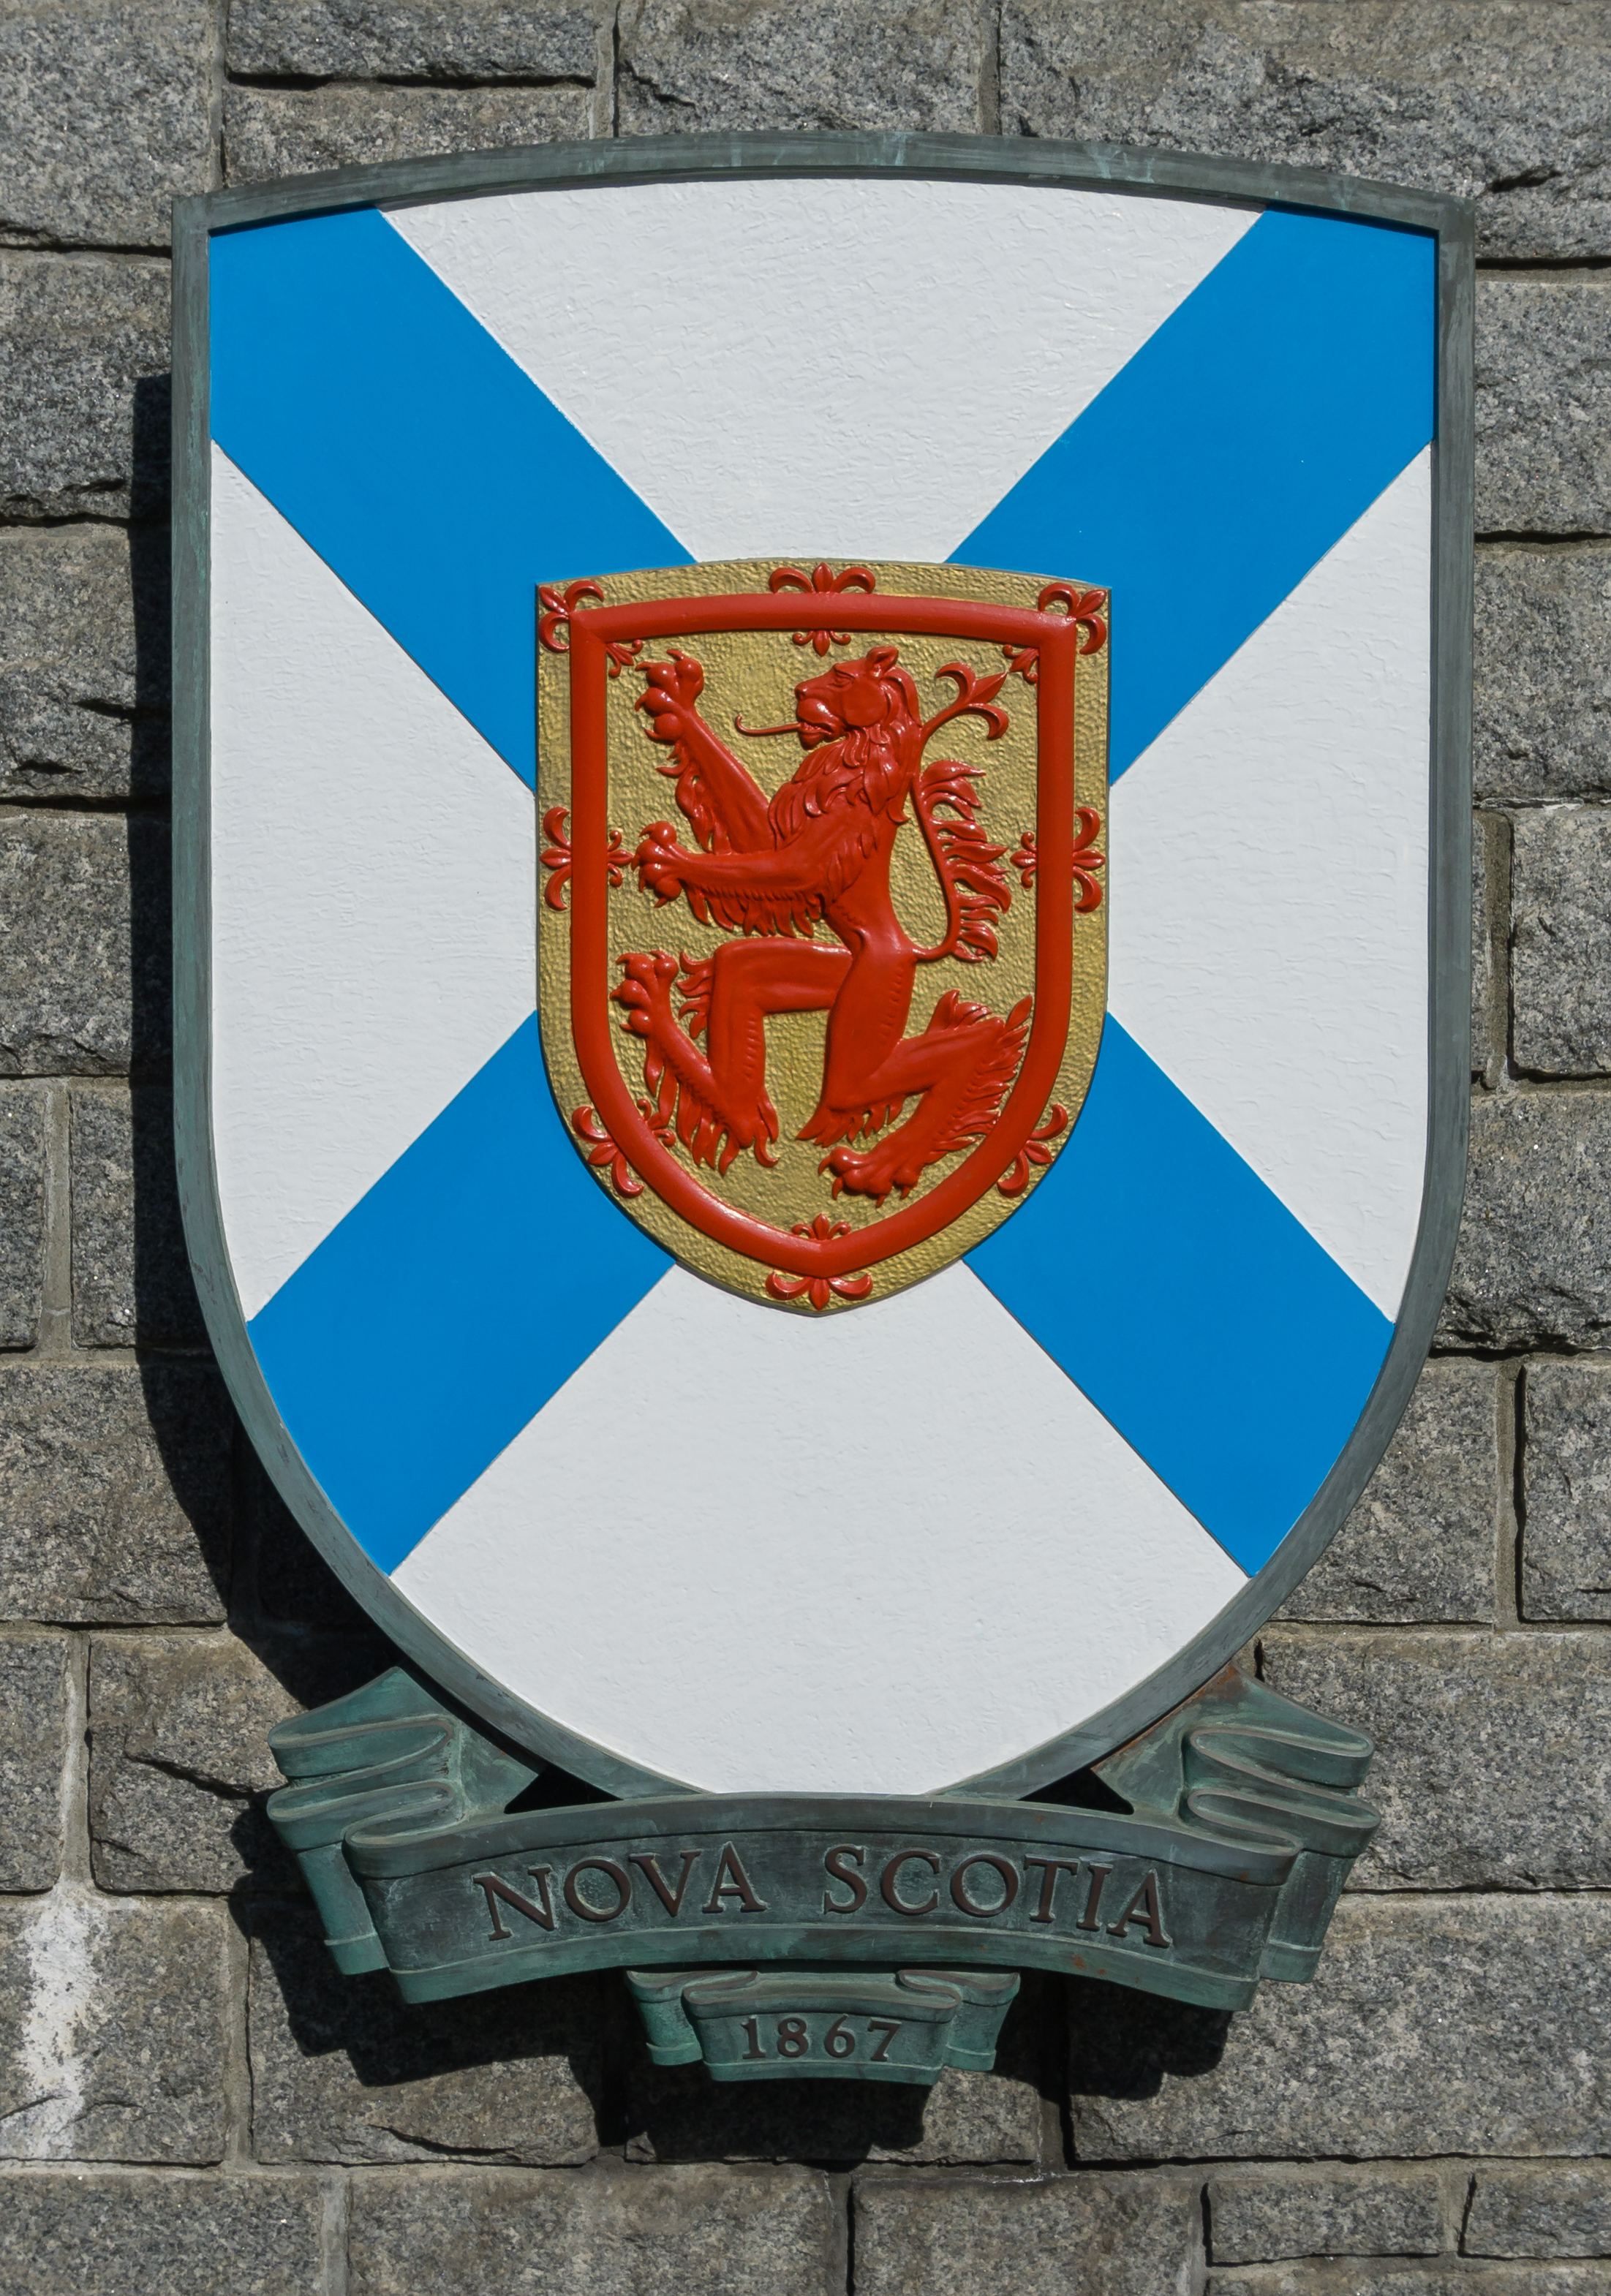 Coats of arms of Nova Scotia, Confederation Garden Court, Victoria, British Columbia, Canada 22